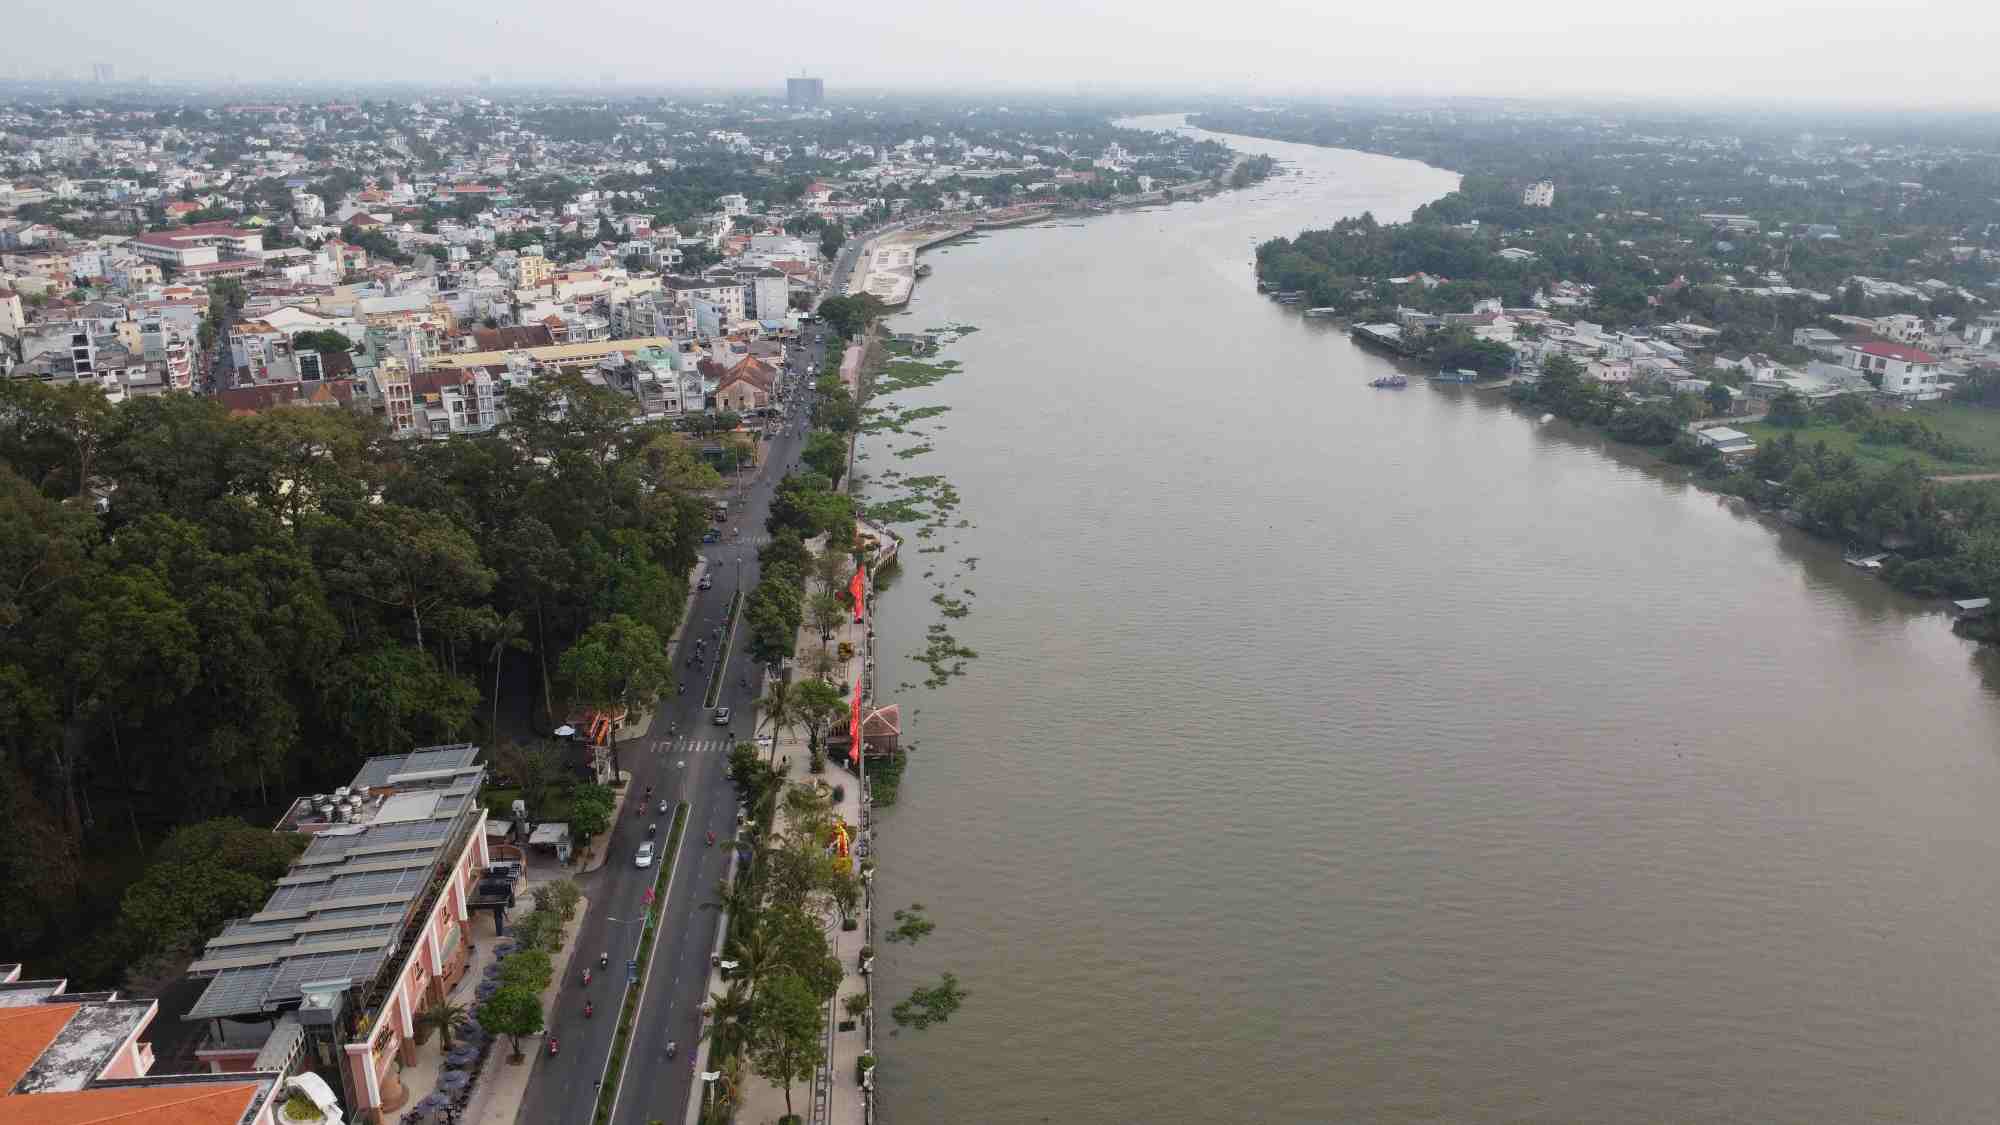 Phía dưới là sông Sài Gòn, bên trái là thành phố Thủ Dầu Một, tỉnh Bình Dương và bên phải là huyện Củ Chi, TPHCM.